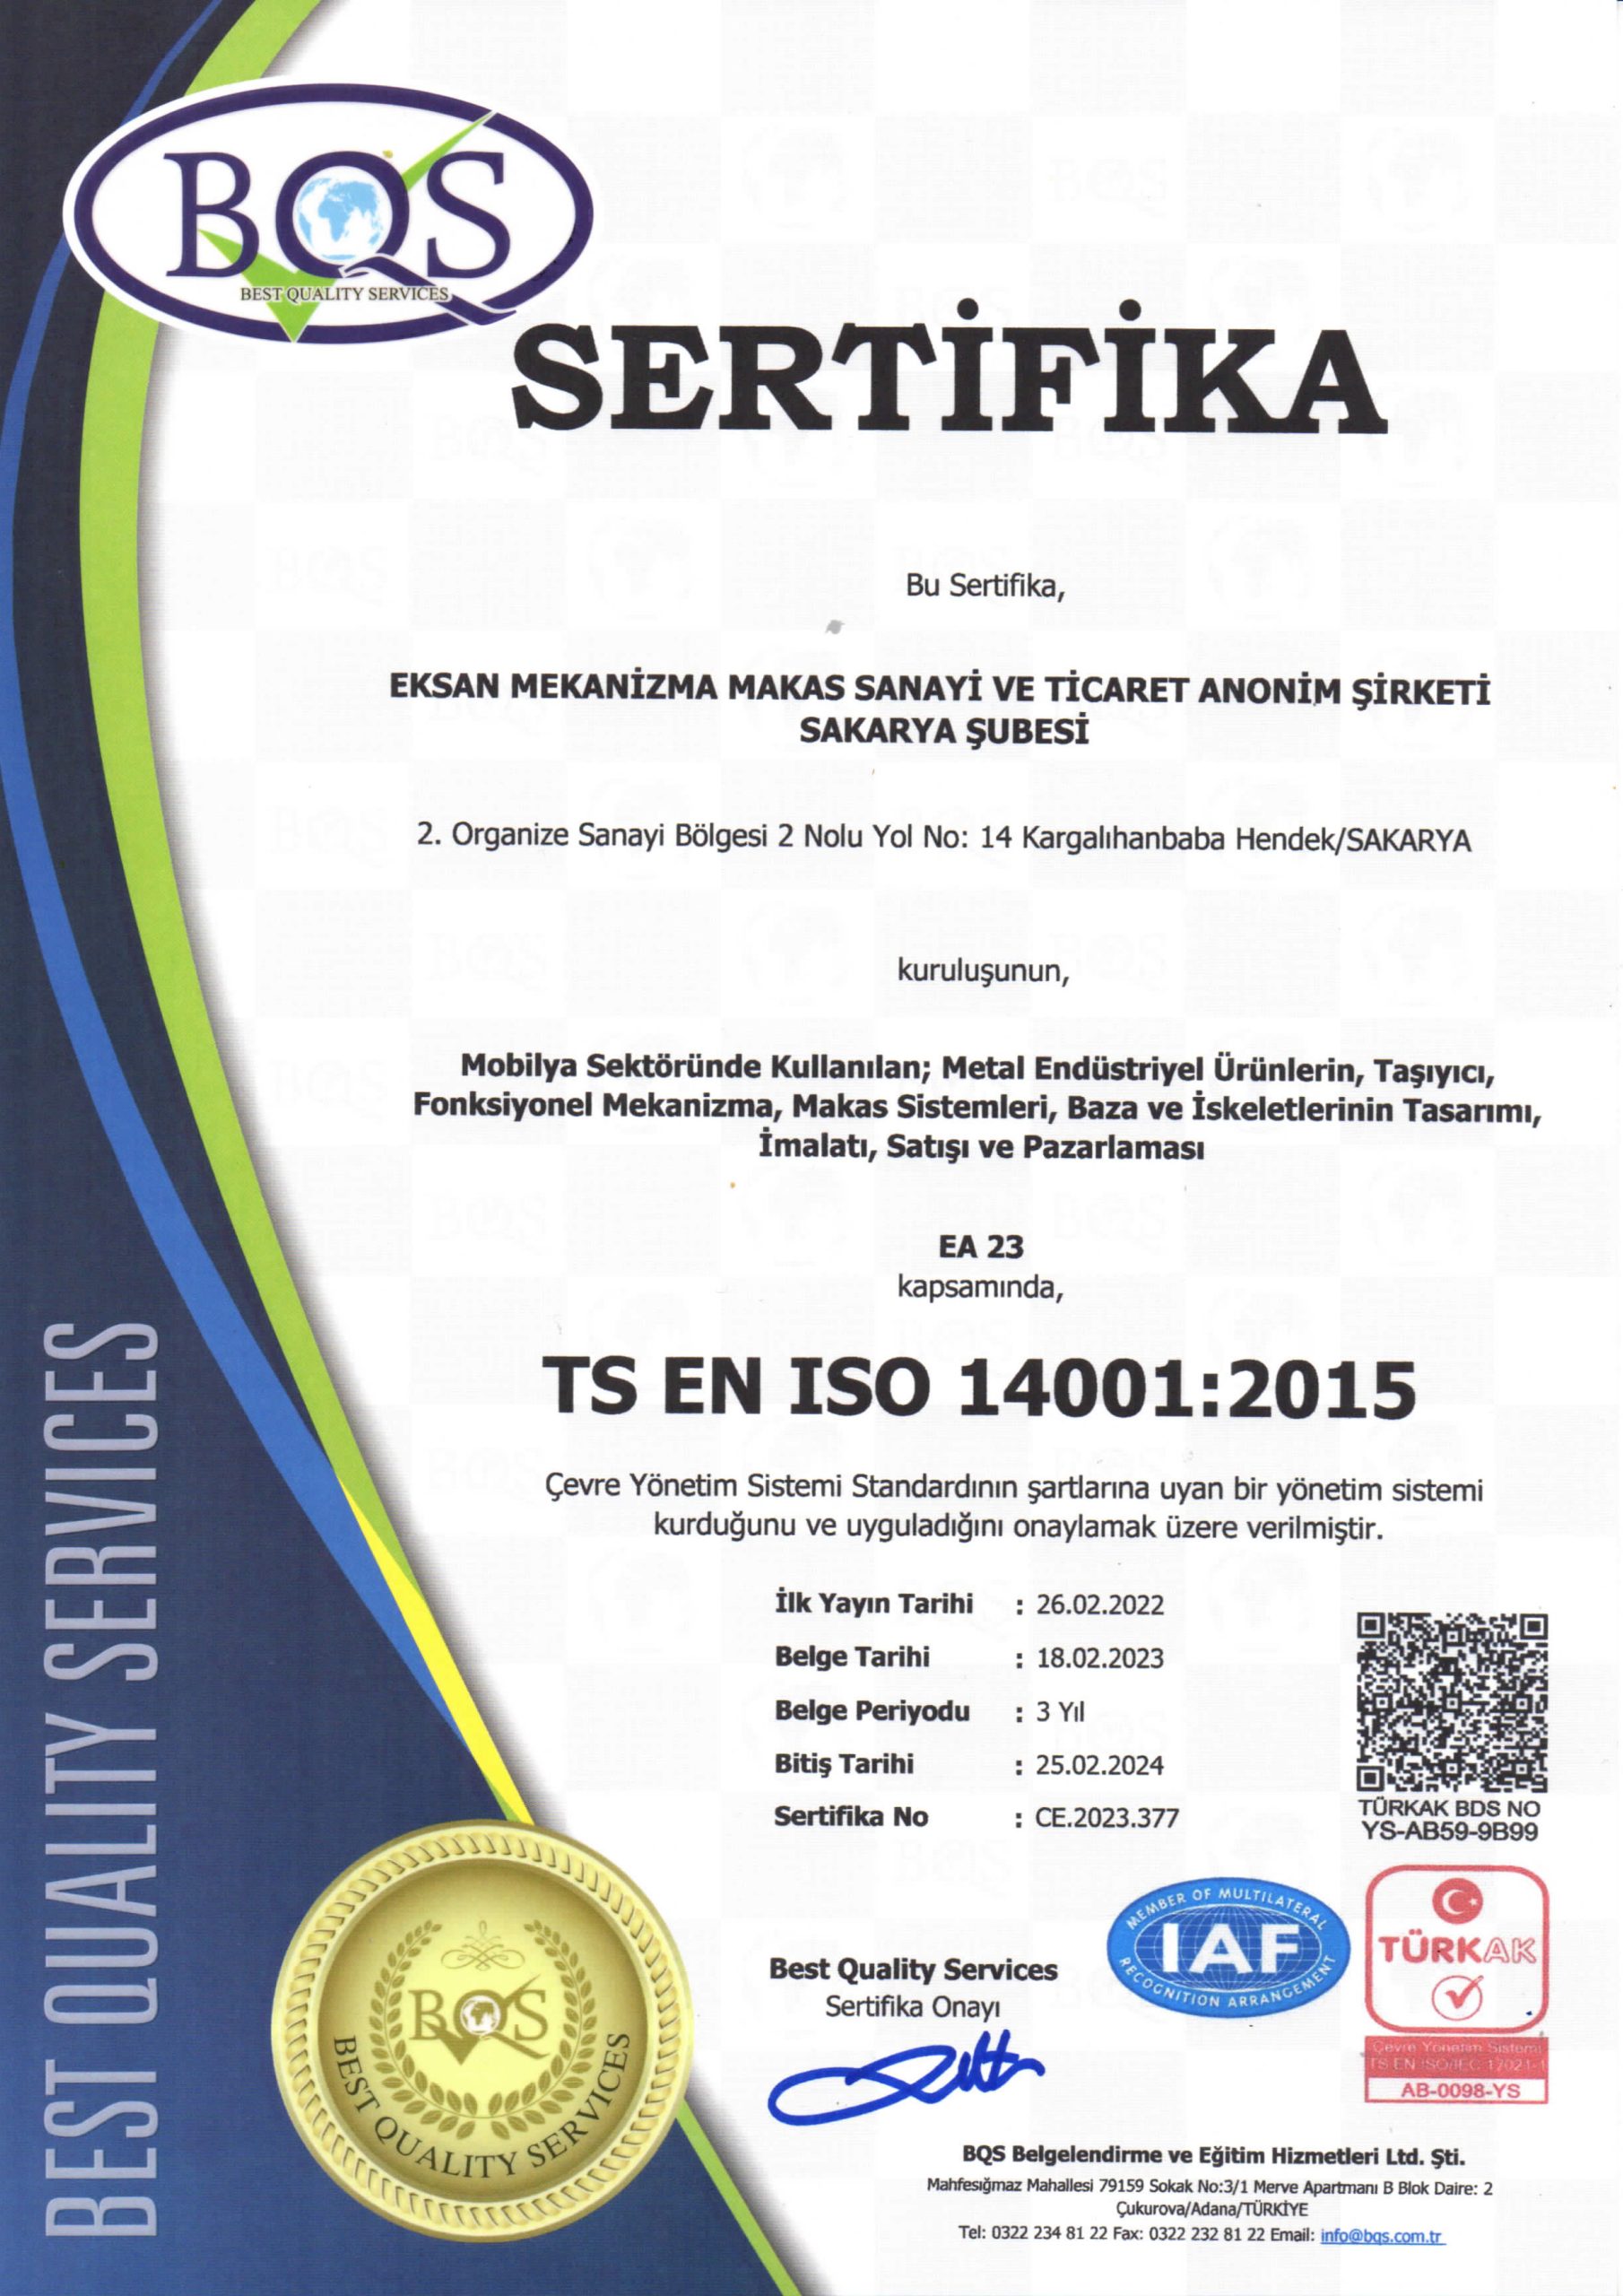 sertifika1-scaled[1]